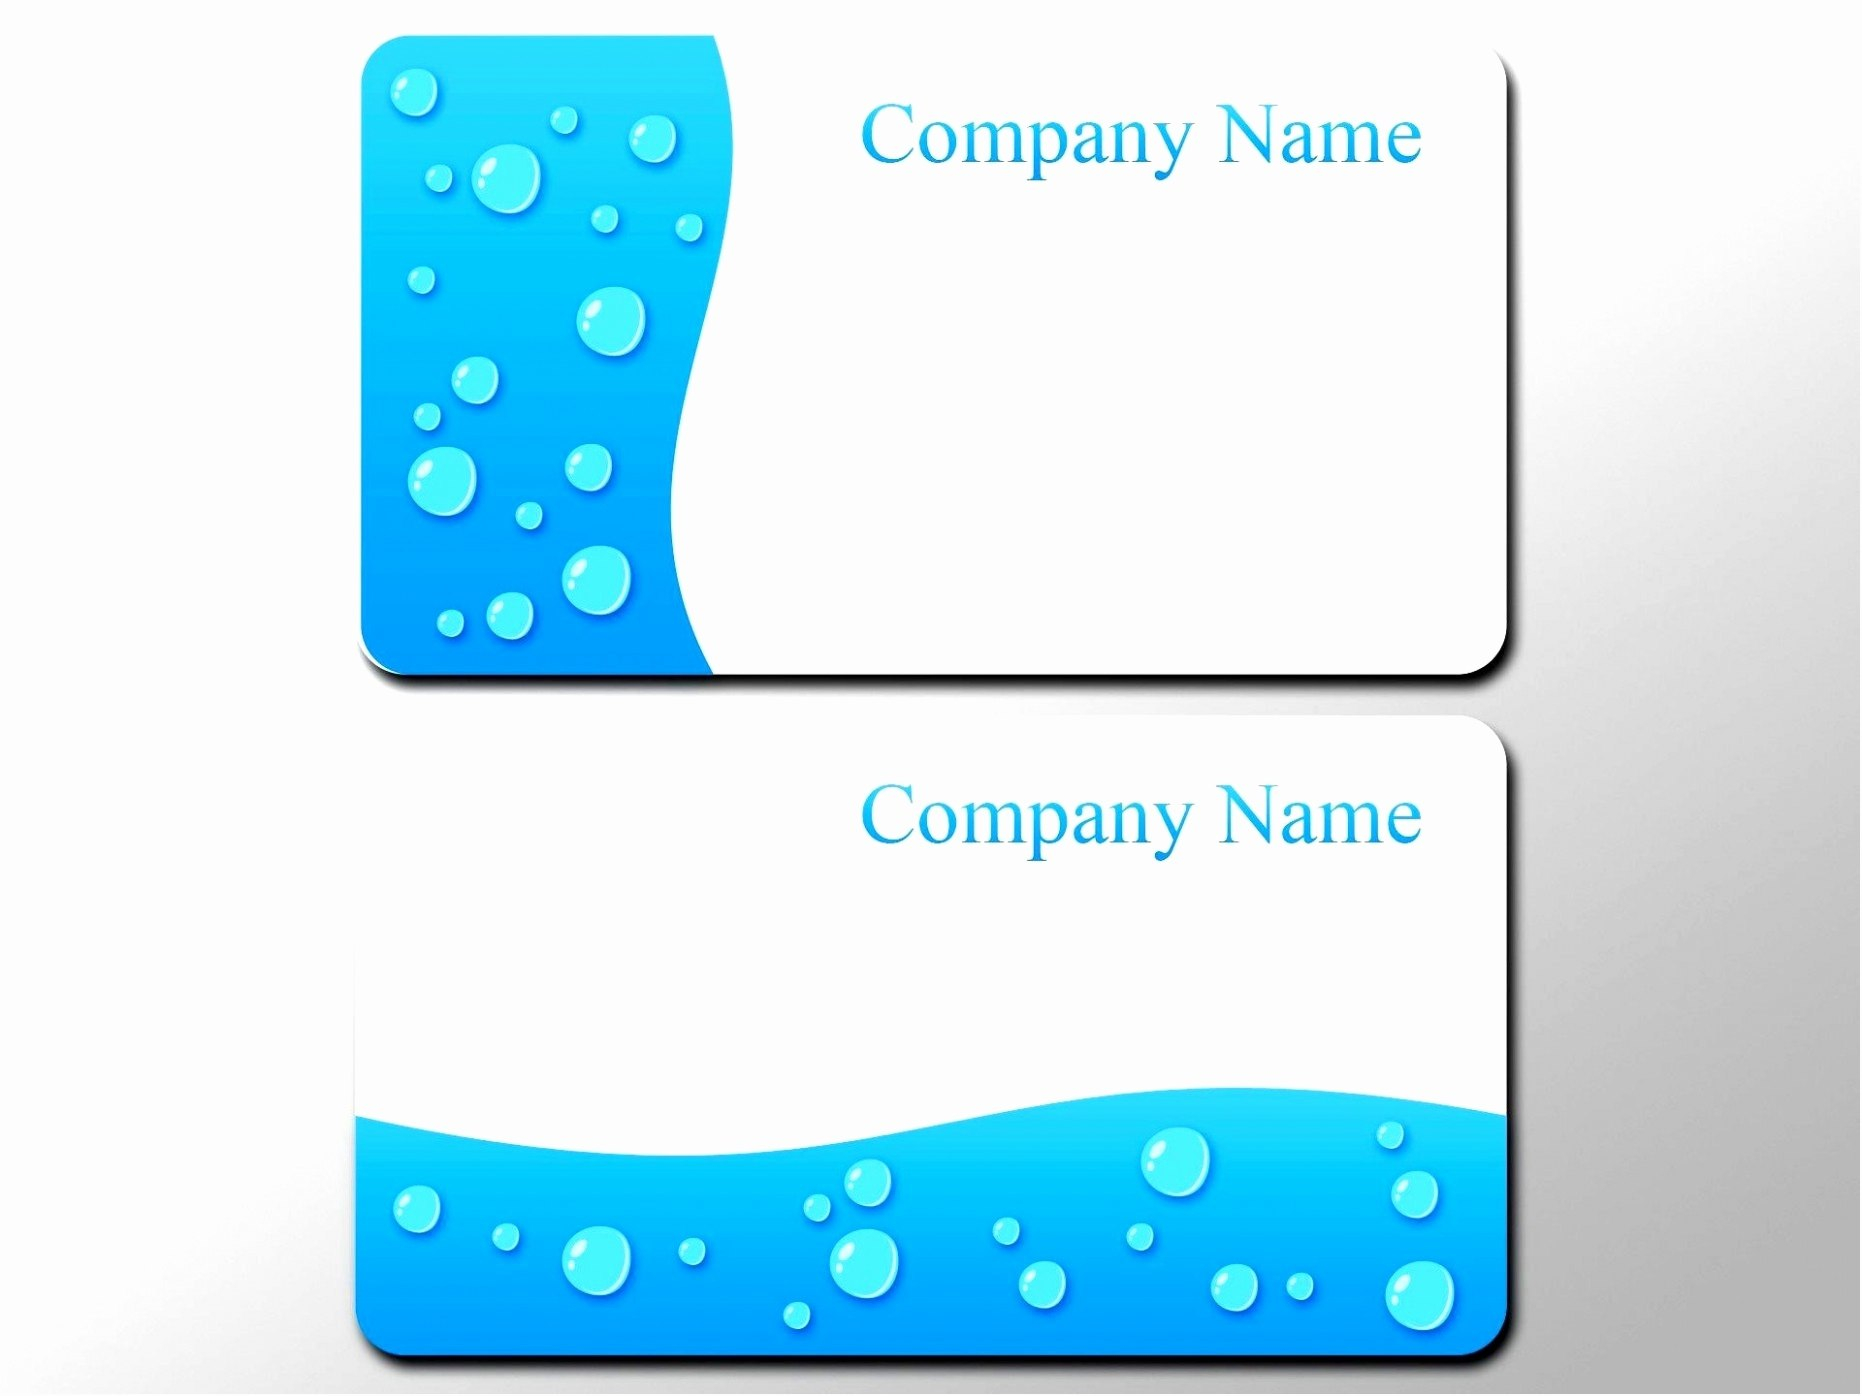 Business Card Size Template Photoshop Unique Business Card Sizes within Business Card Size Psd Template